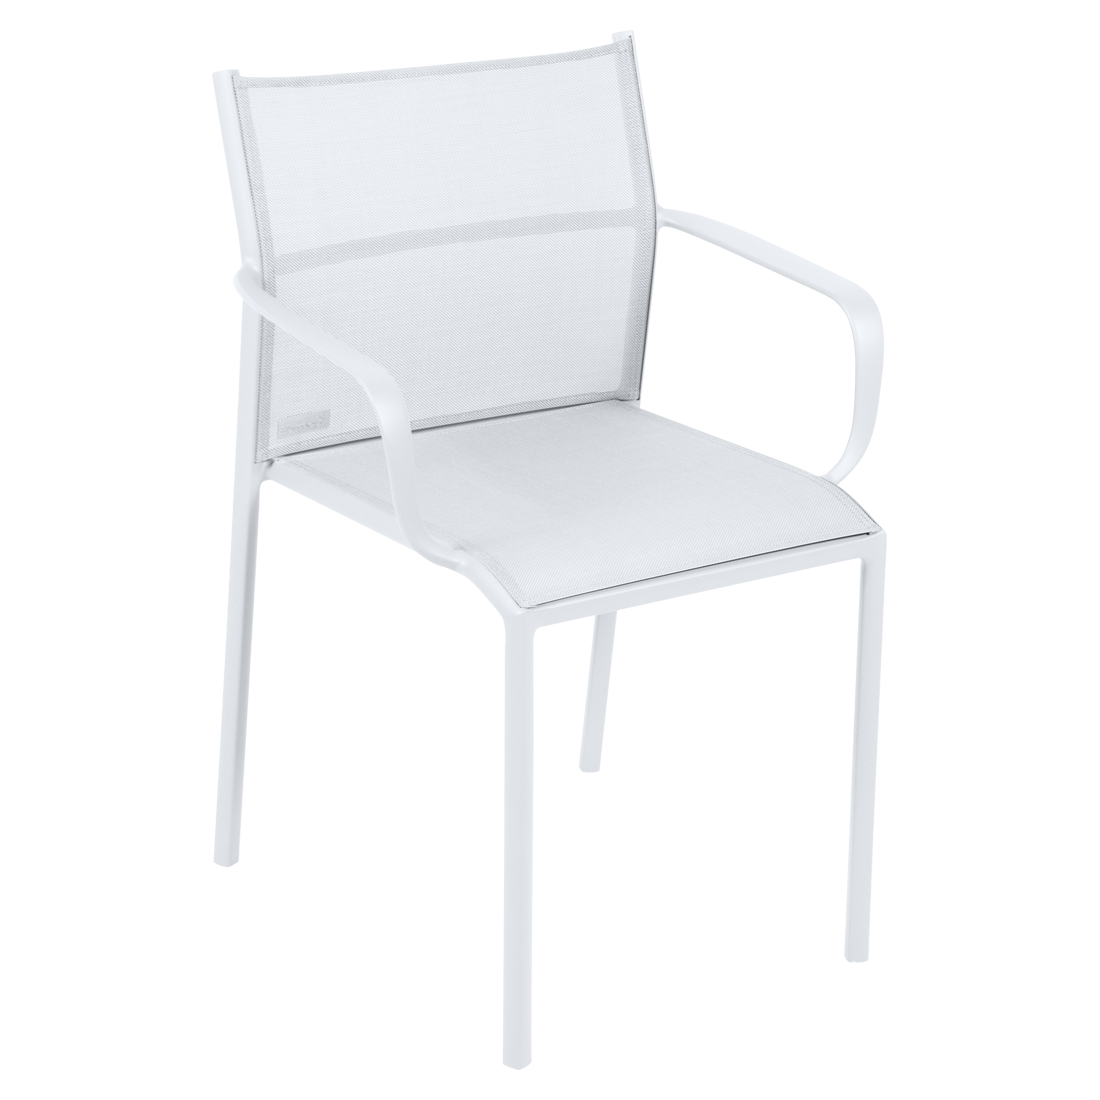 chaise bridge de jardin, chaise bridge en métal et toile blanc coton